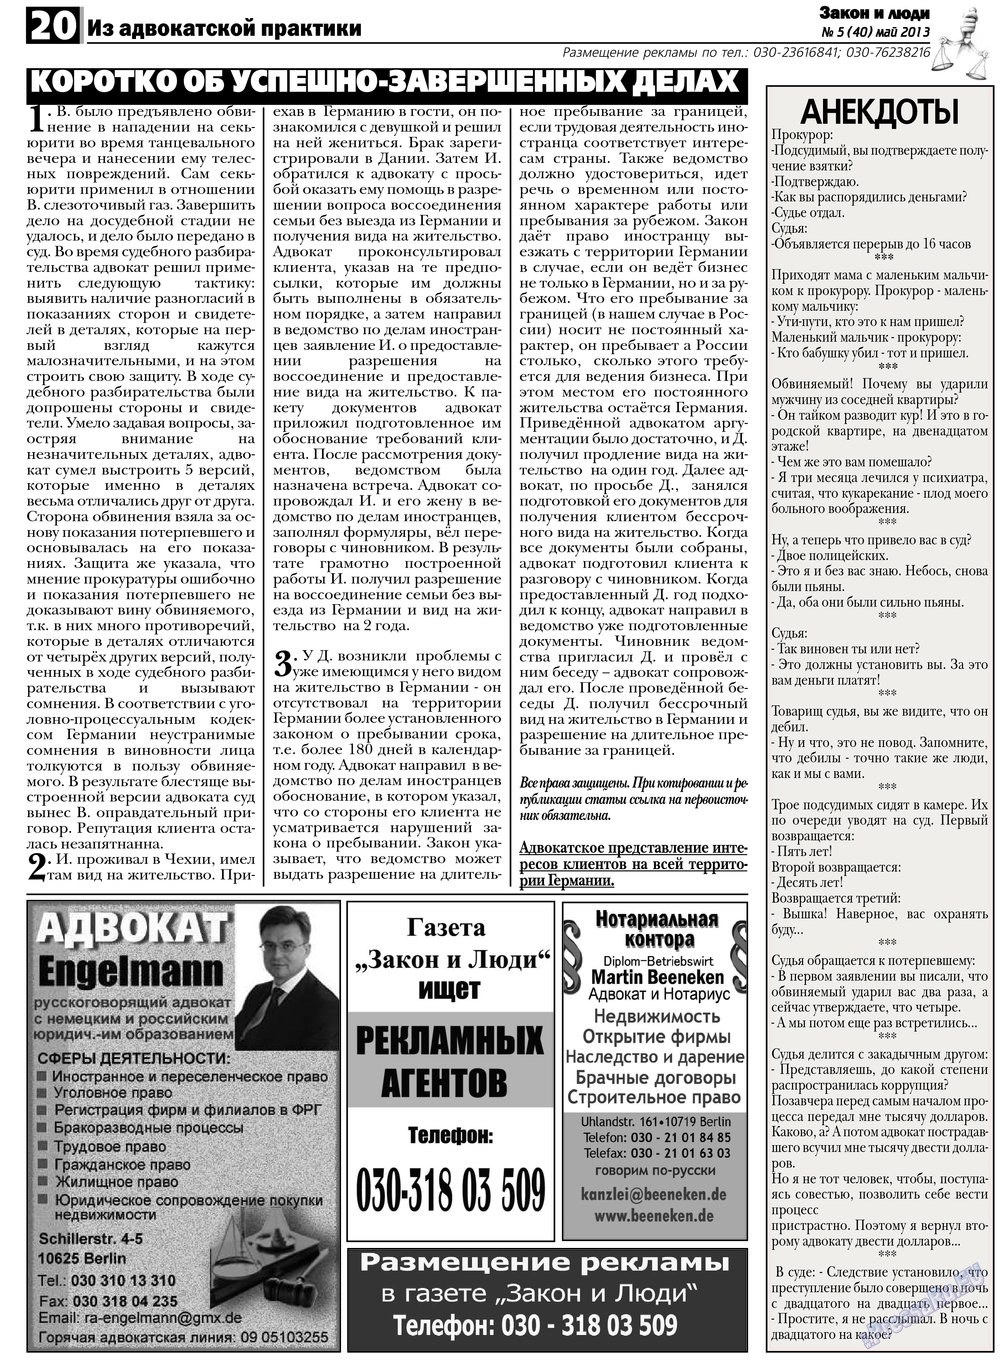 Закон и люди, газета. 2013 №5 стр.20